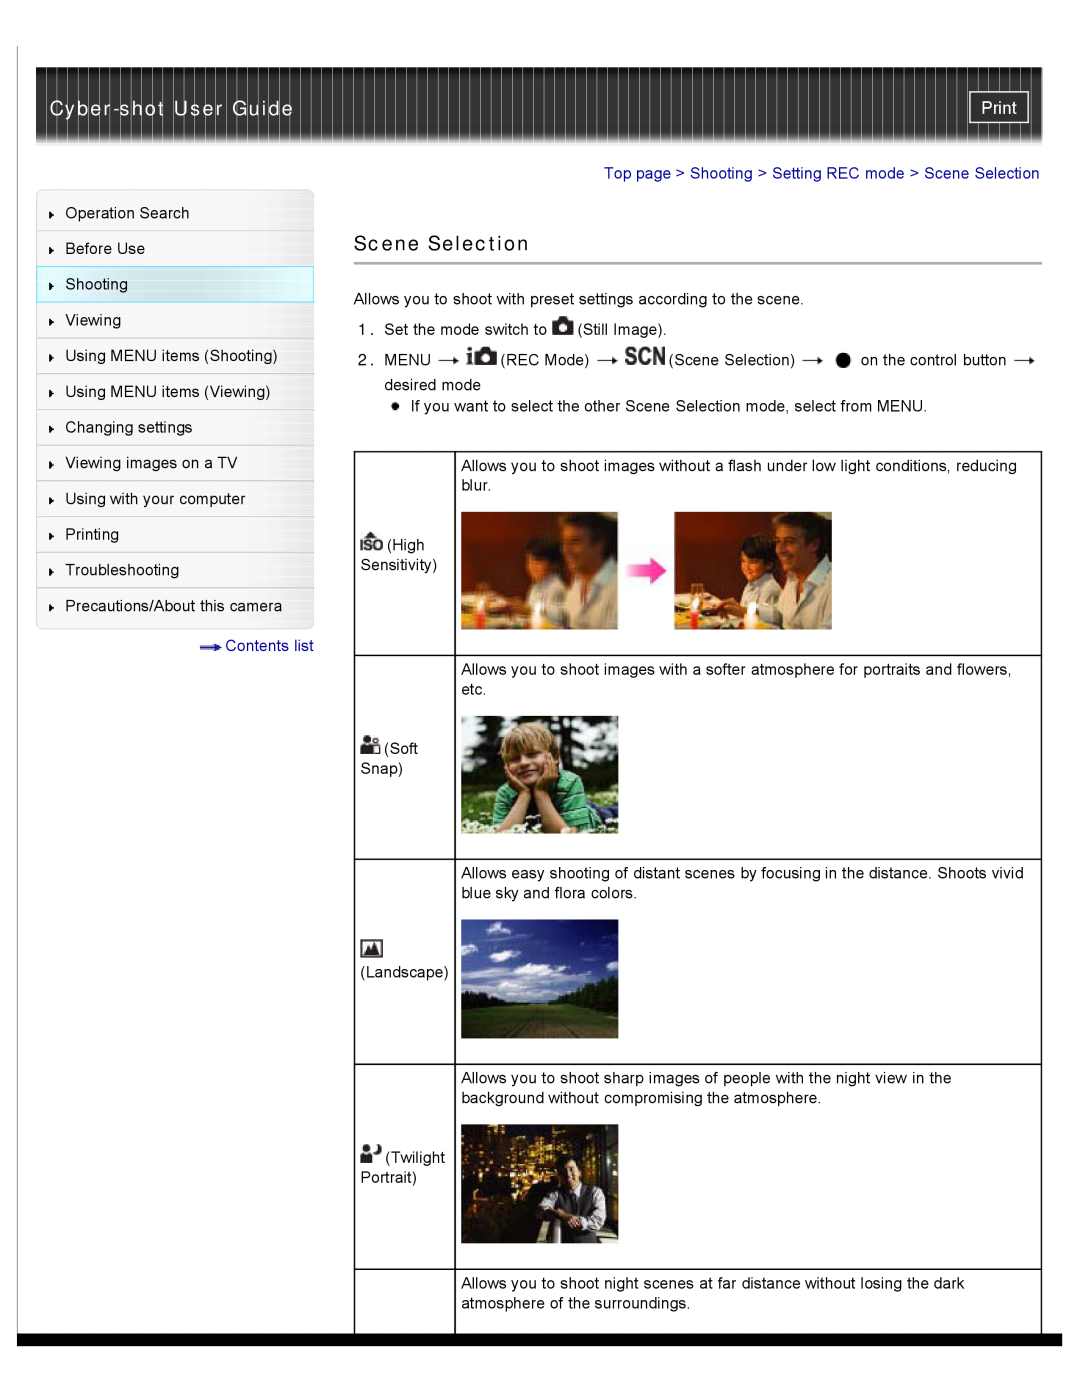 Sony DSC-W530, W550, DSCW530 manual Scene Selection, Cyber-shot User Guide, Print, Contents list 